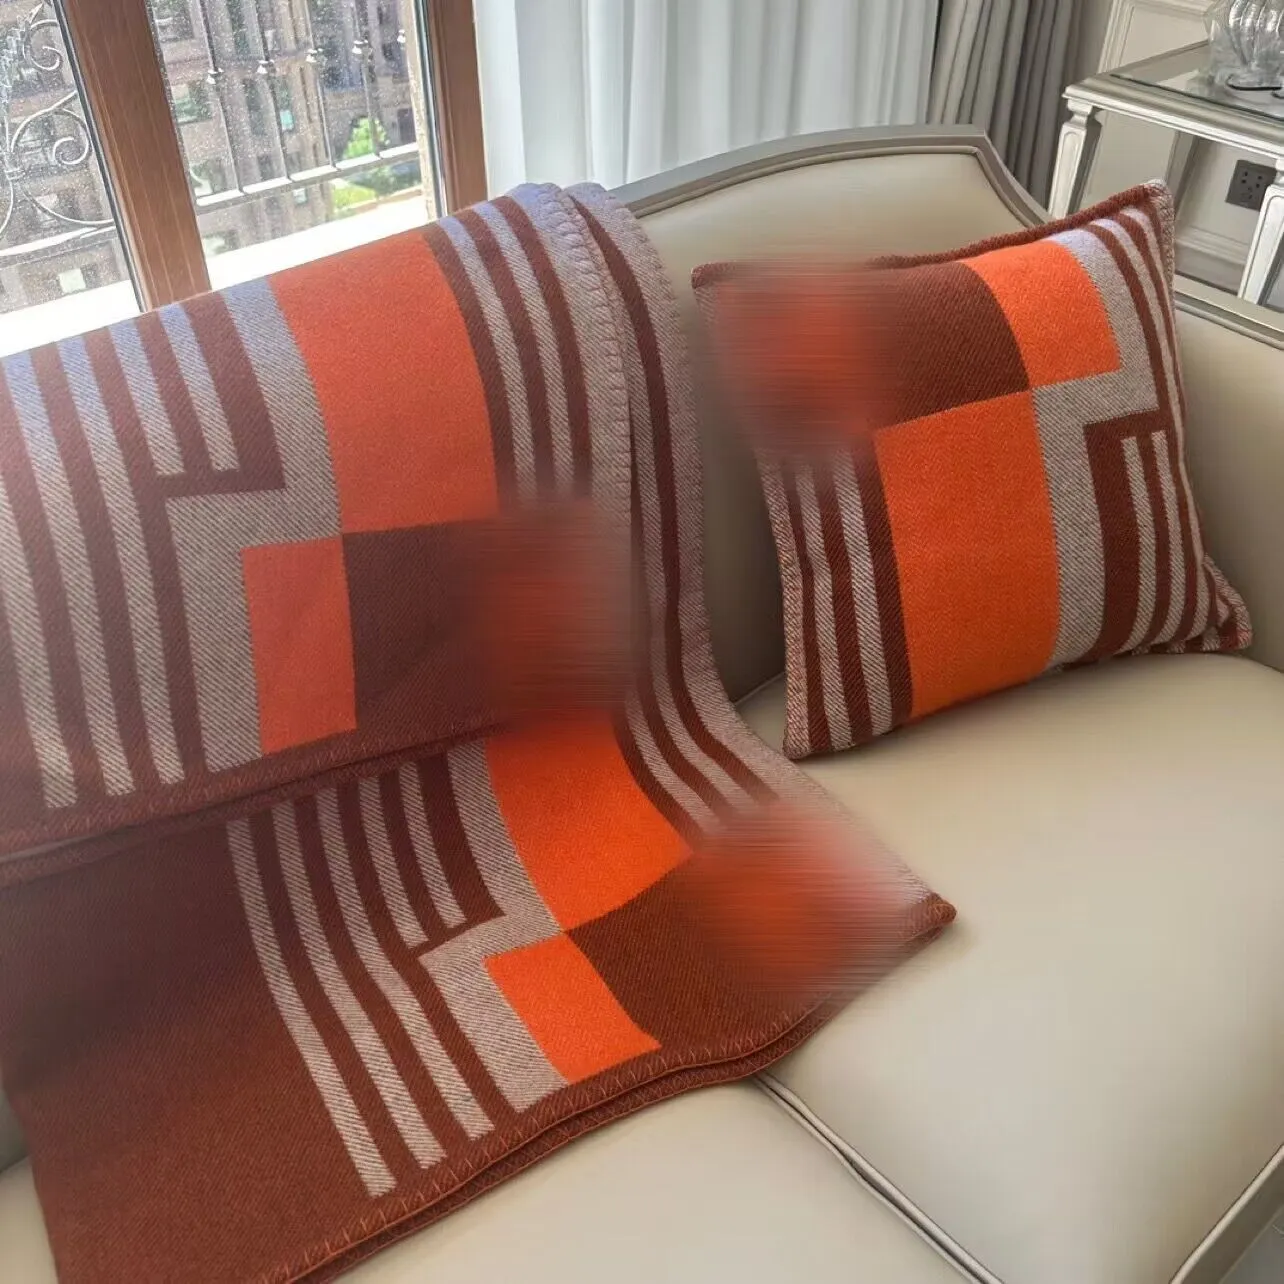 Дизайнерские роскошные одеяла настоящая шерстяная кашемир сгущается 3 цвета.